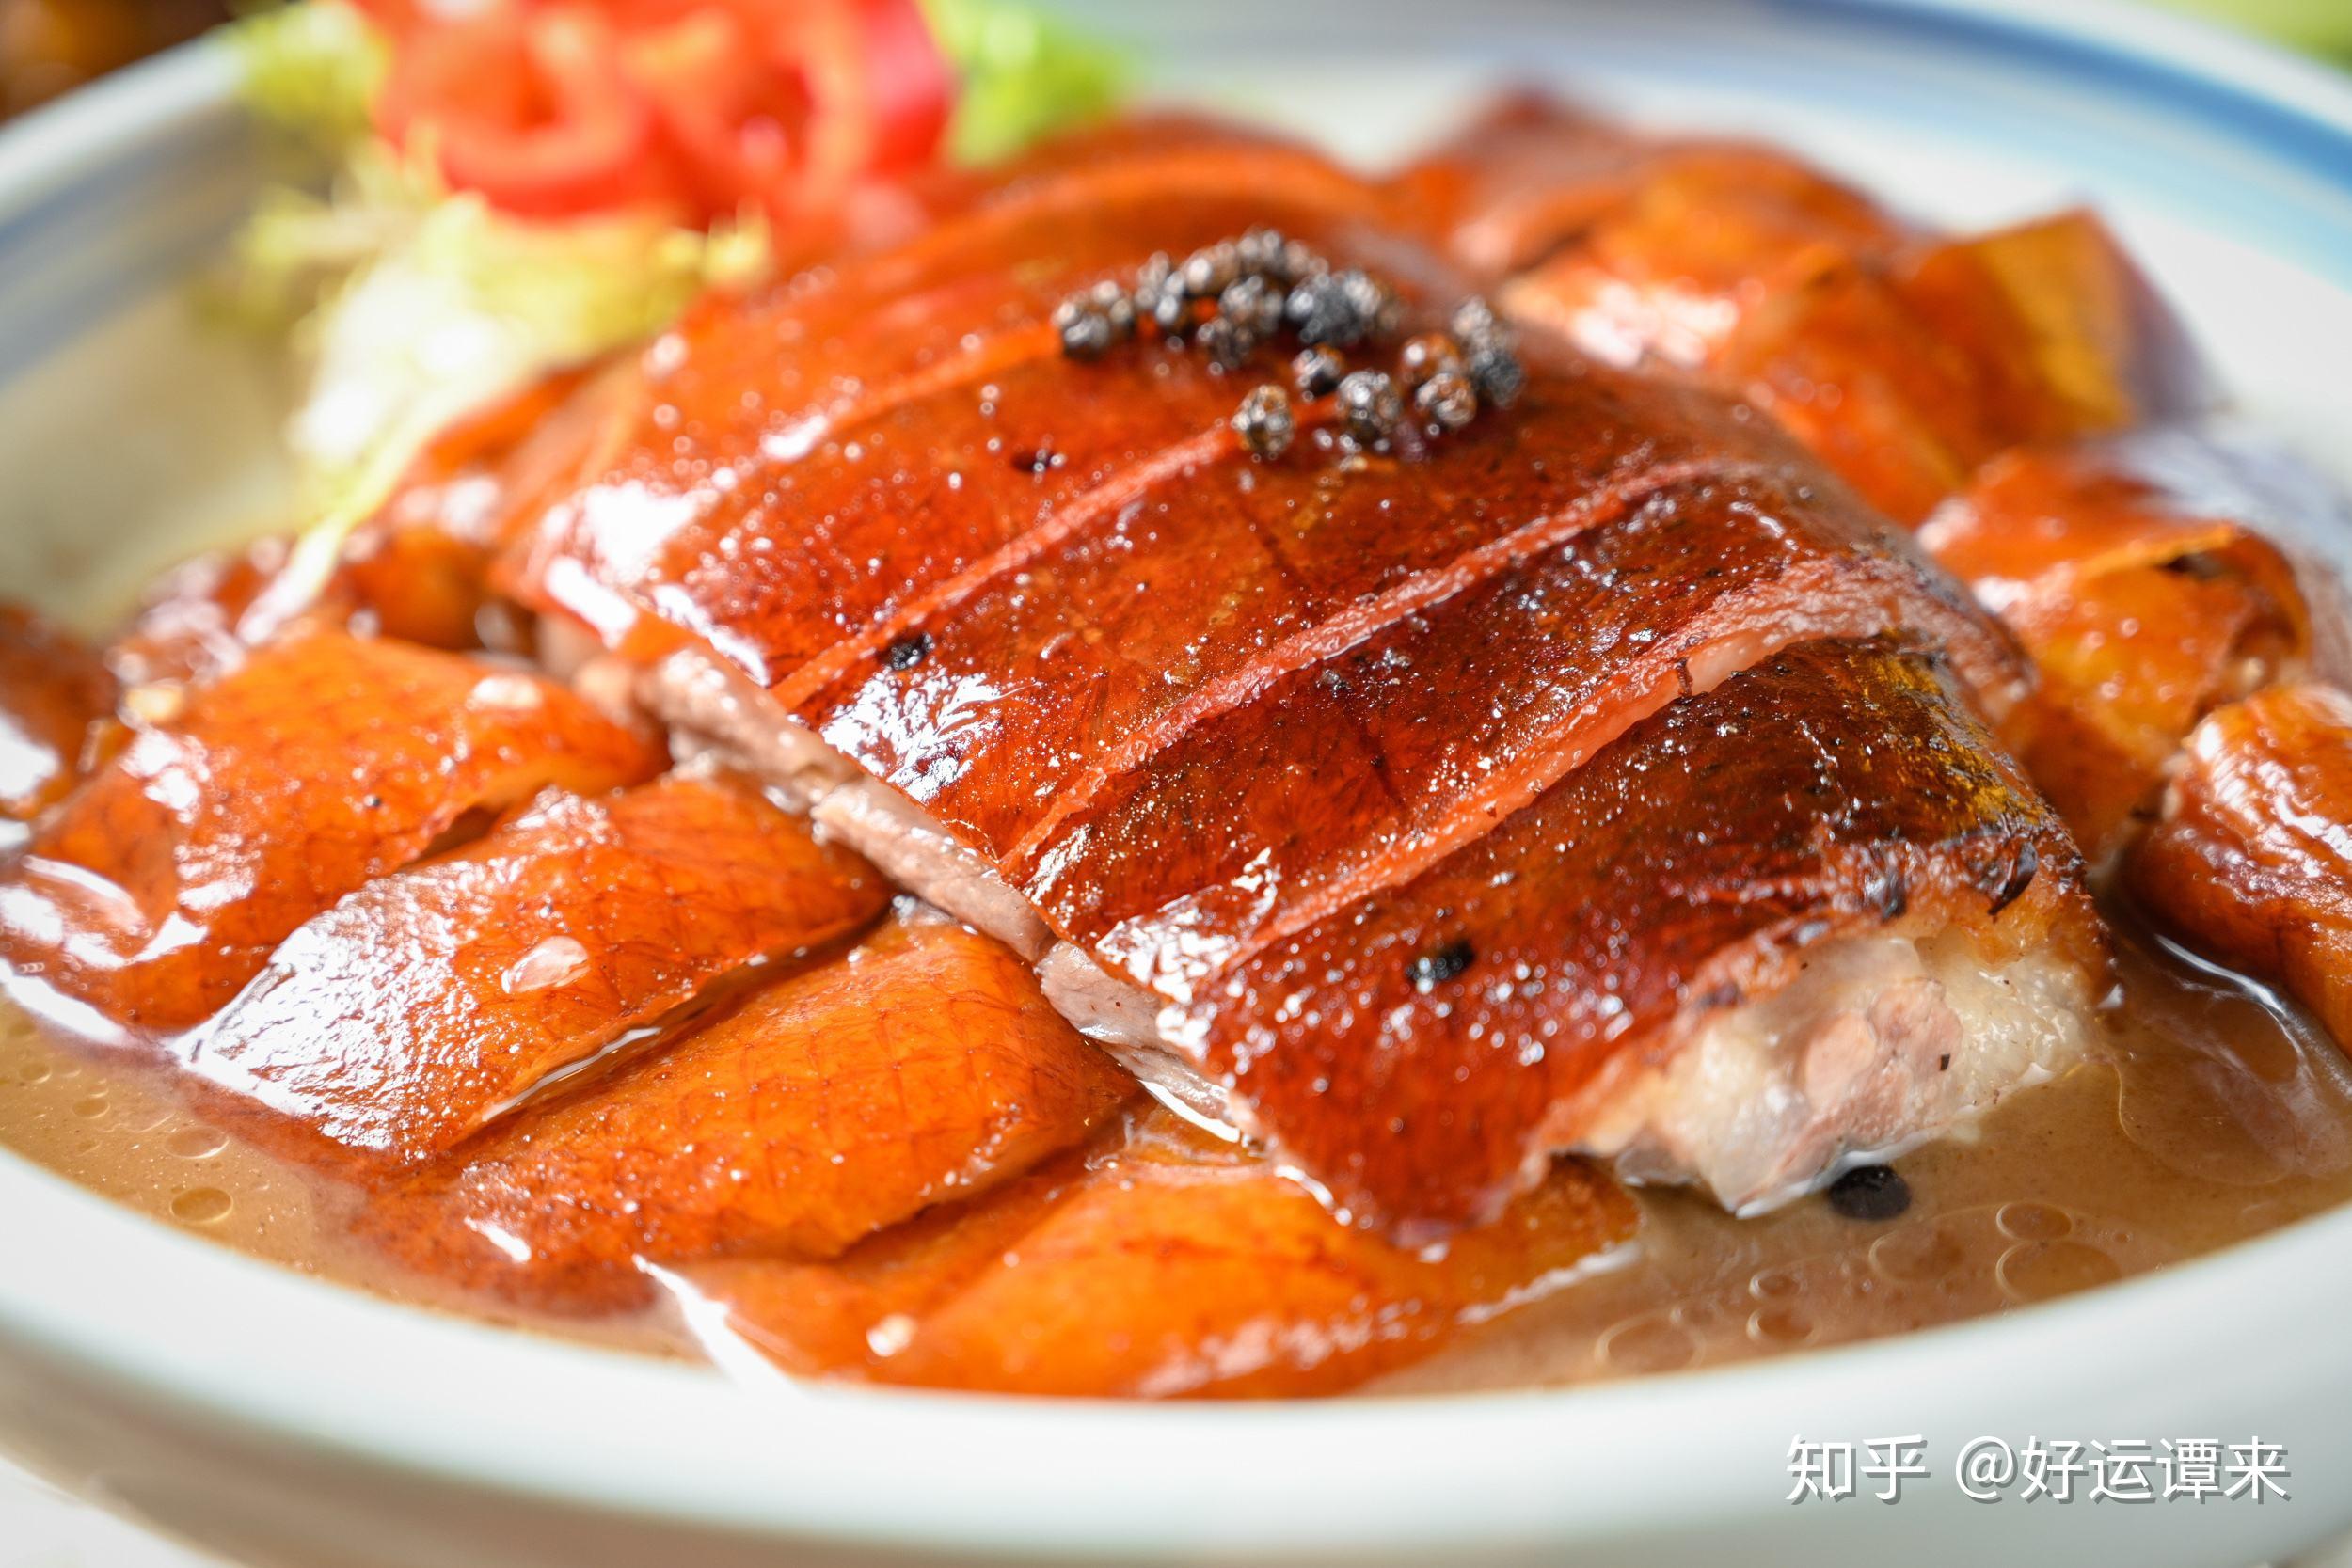 广州旅游特产小吃美食推荐之:烧鹅